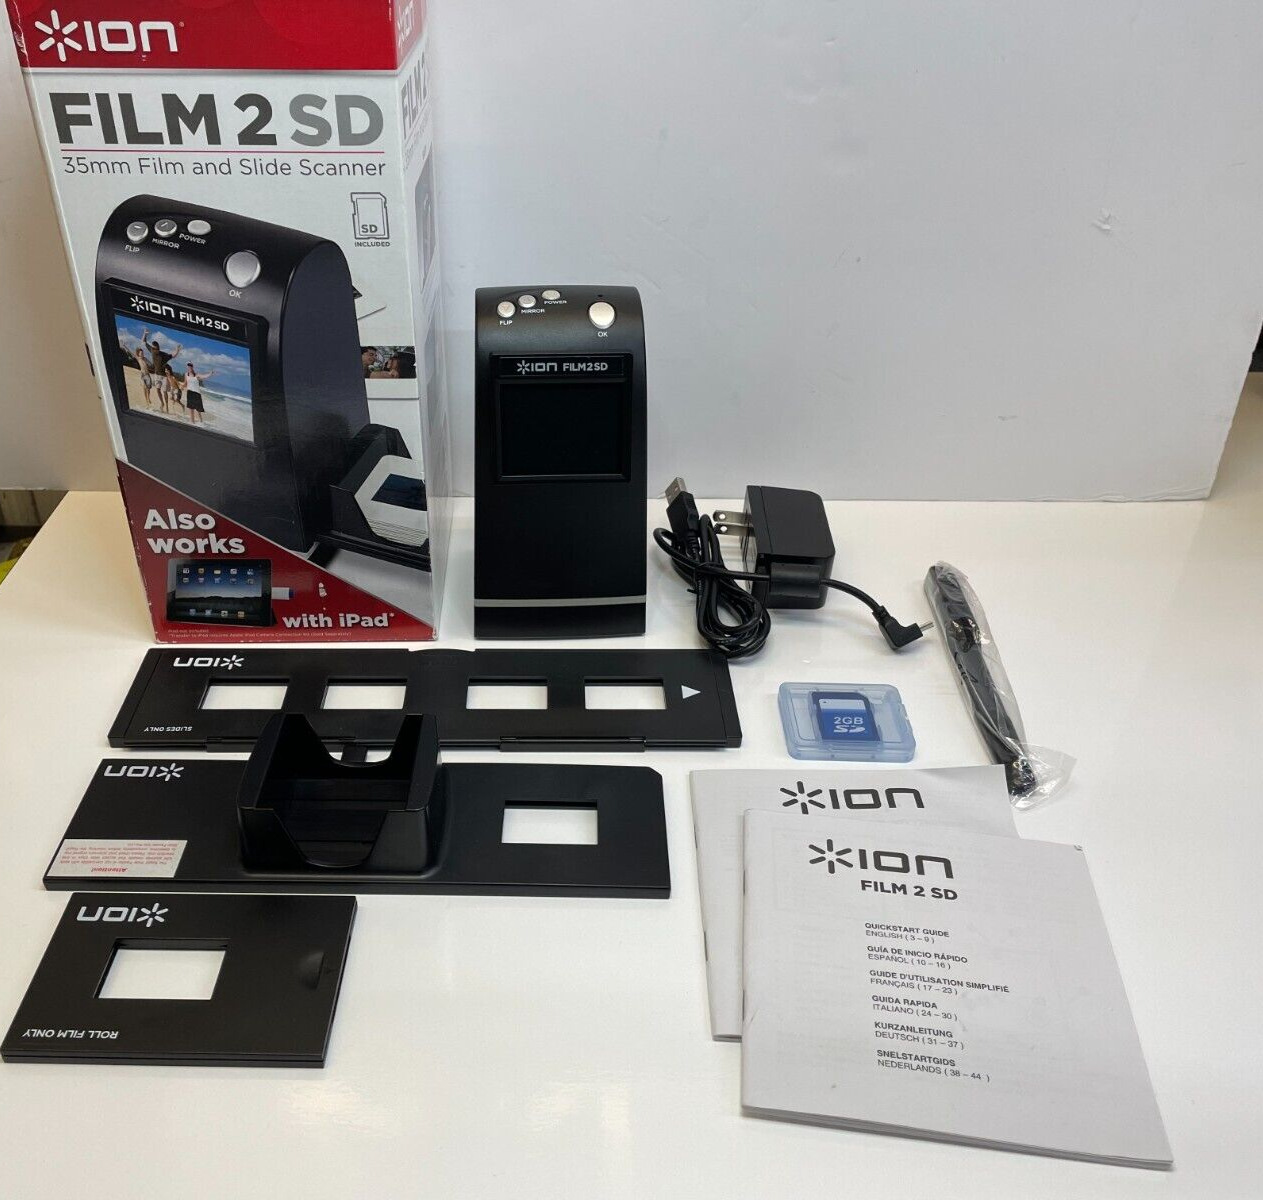 ION FILM2SD 5 MP Sensor Film 2 SD 35MM Film & Slide Scanner 